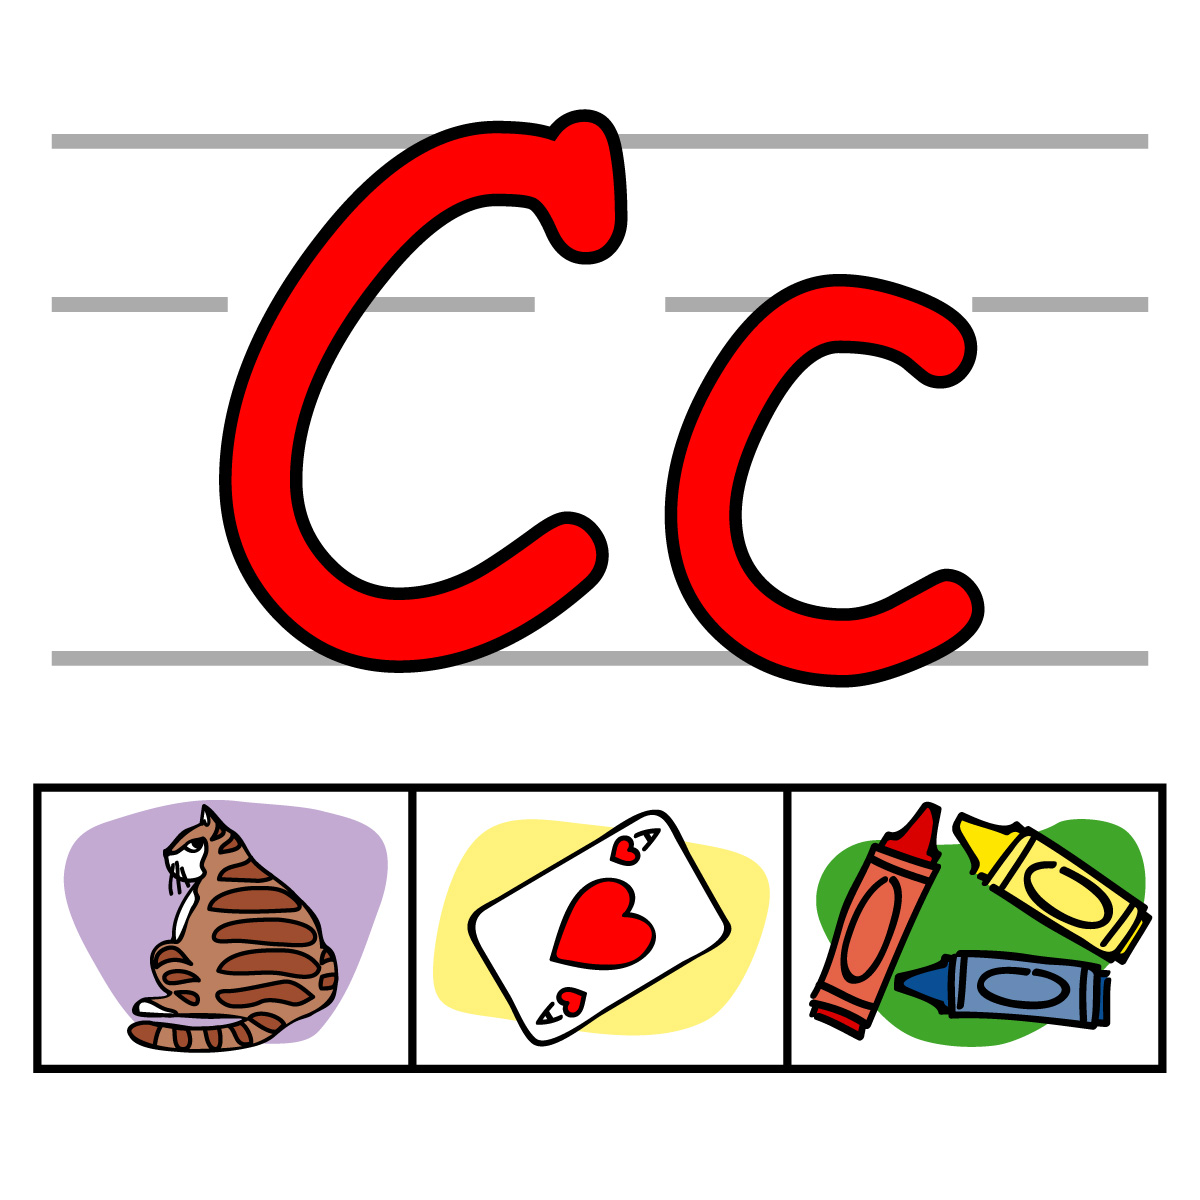 c clipart alphabet